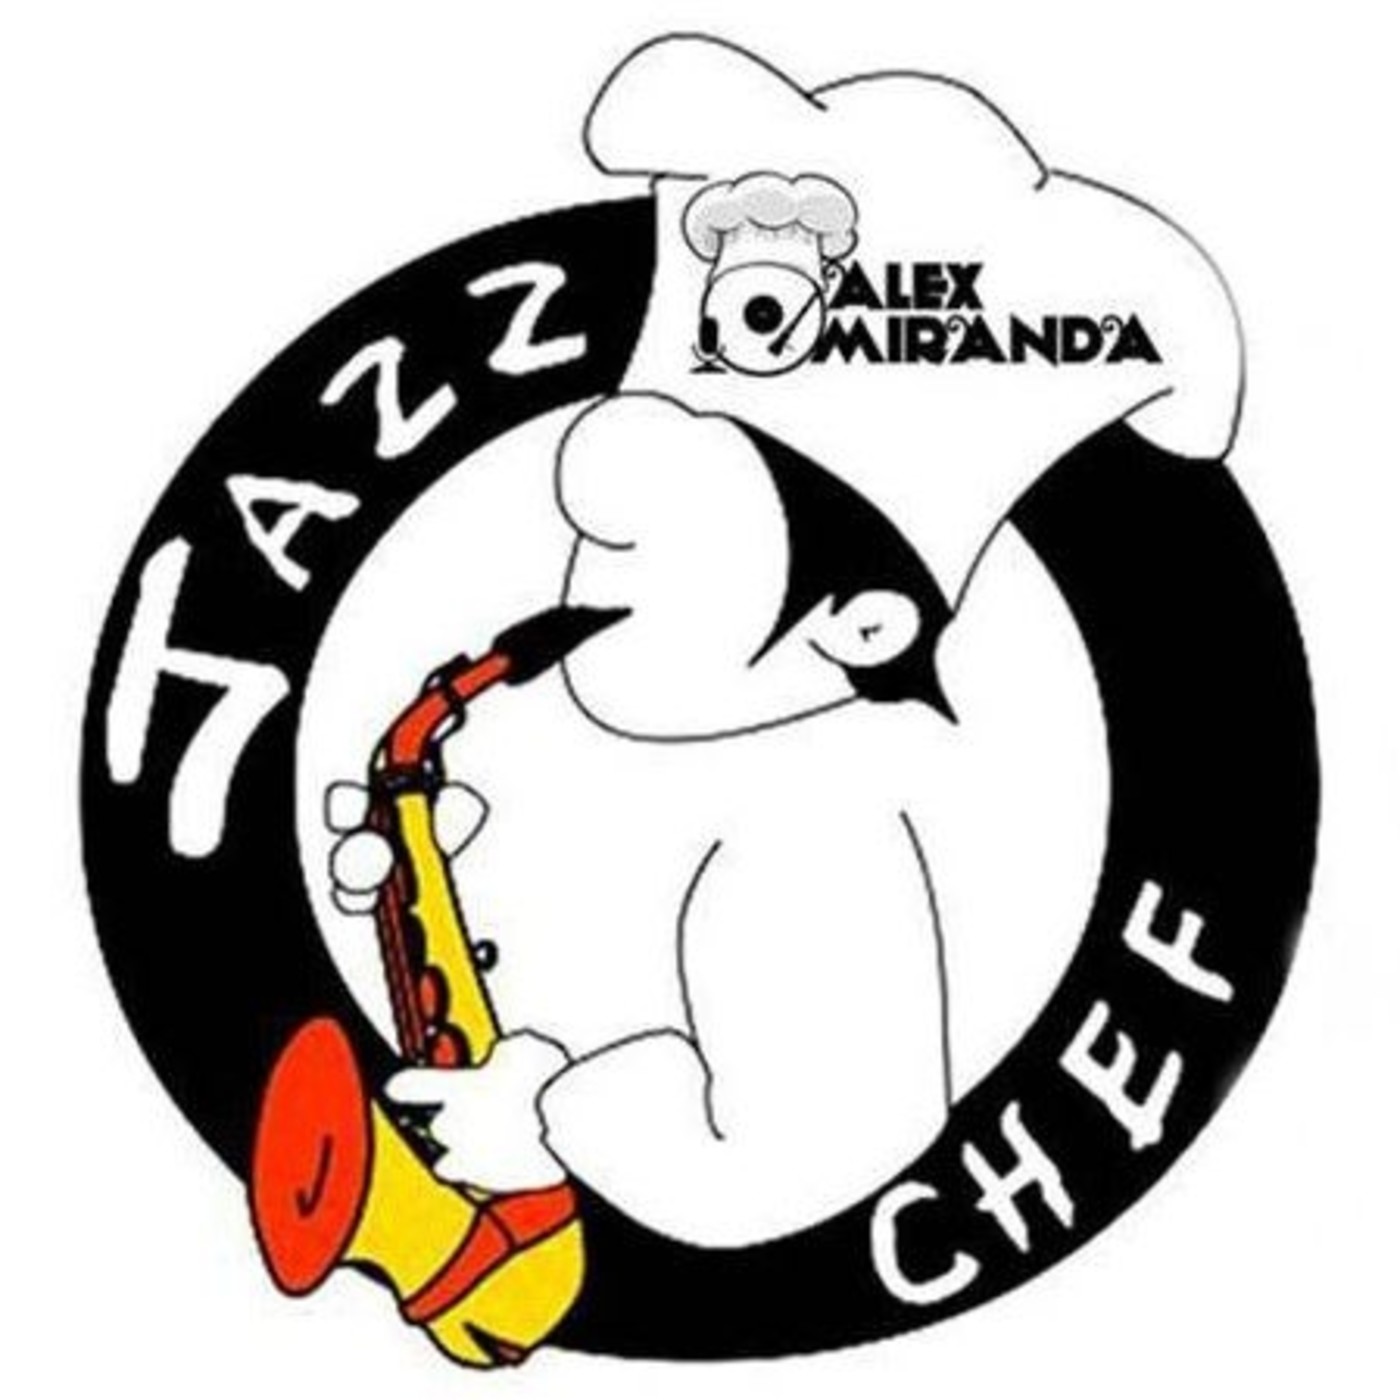 2017/10/07 - A la sazón del Jazz